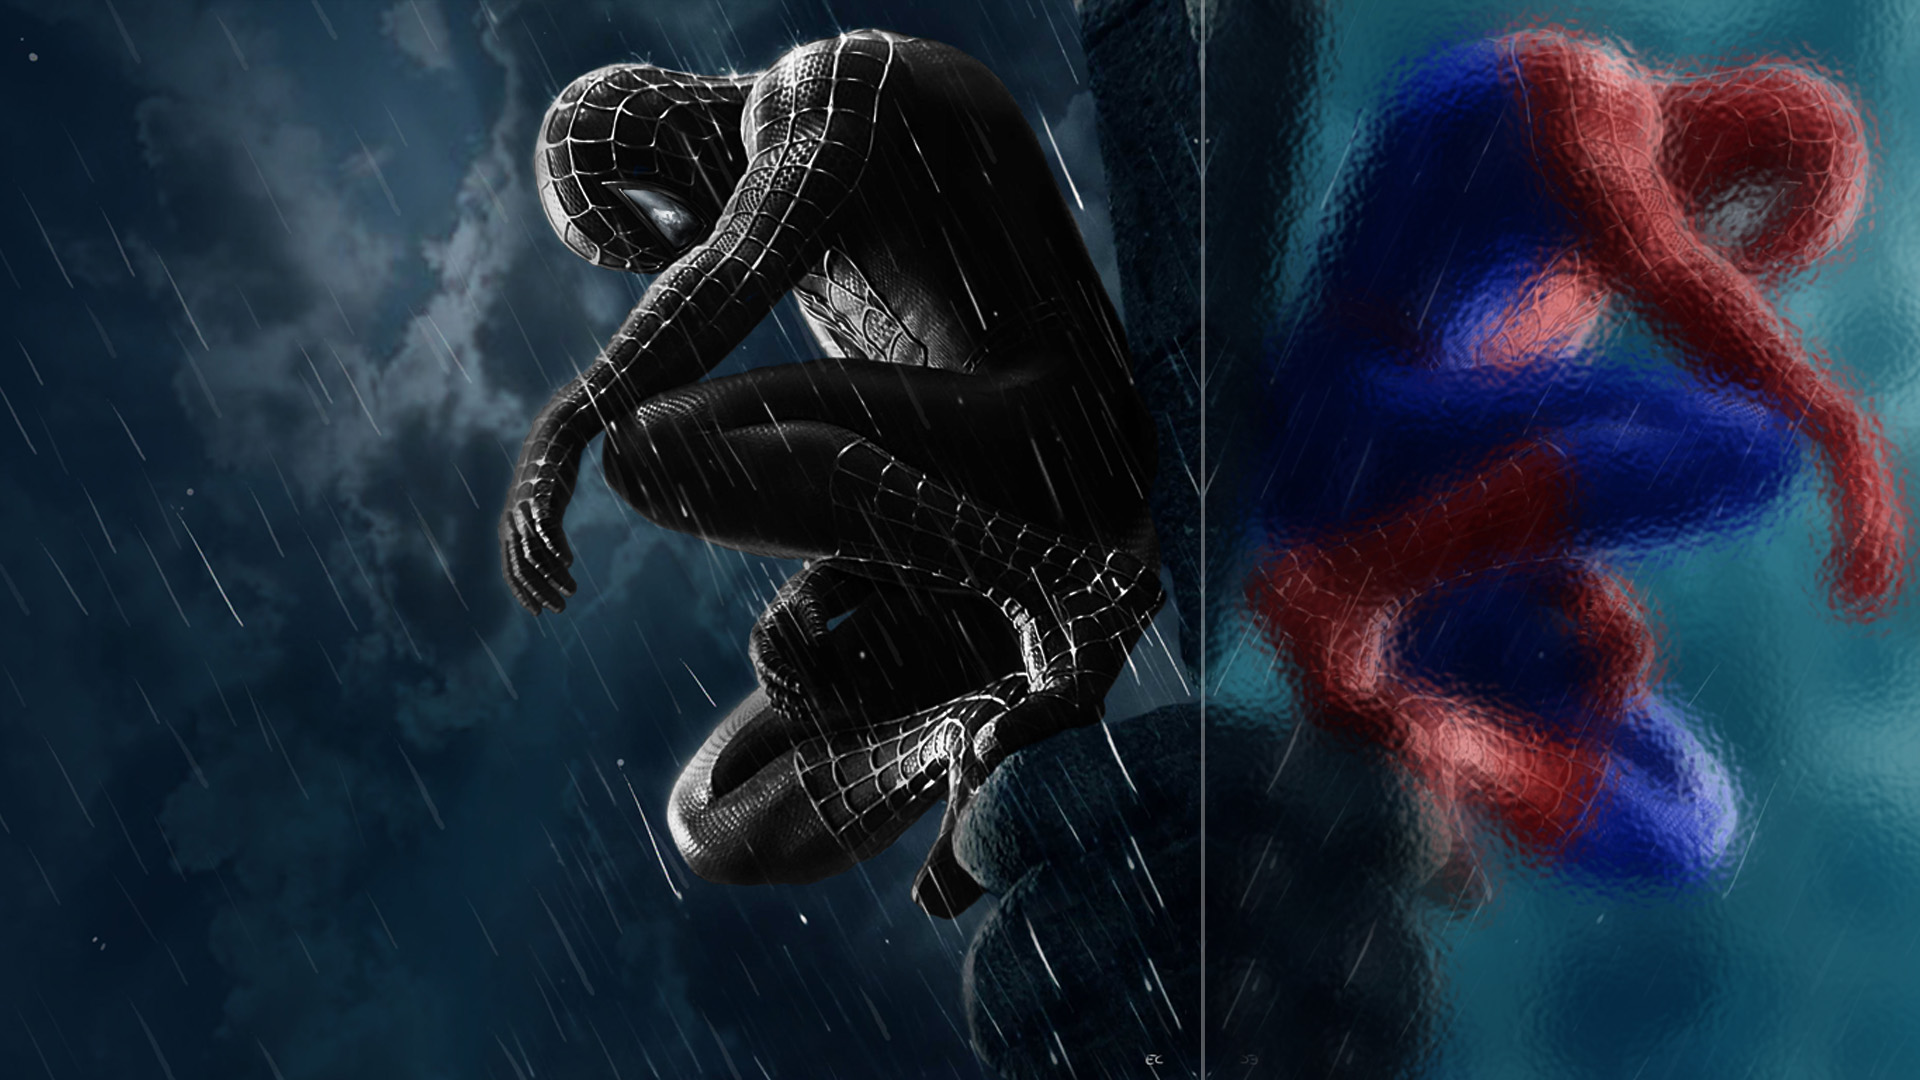 fondo de pantalla de spiderman negro,cg artwork,personaje de ficción,diseño gráfico,espacio,composición digital